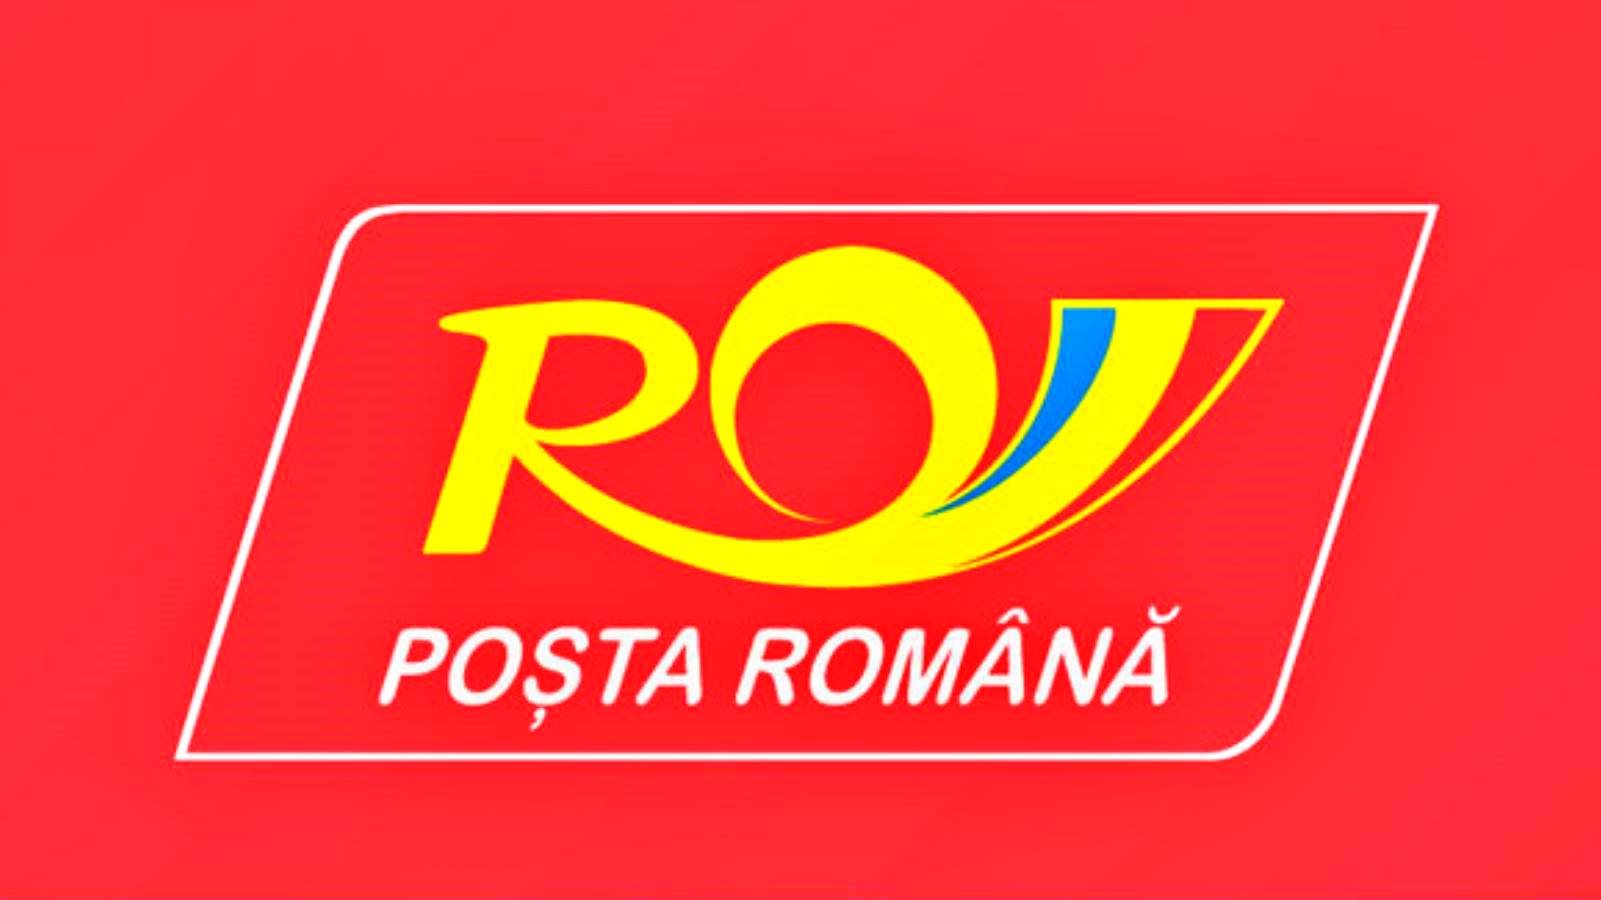 Die offizielle Ankündigung der rumänischen Post, die viele Rumänen überraschte